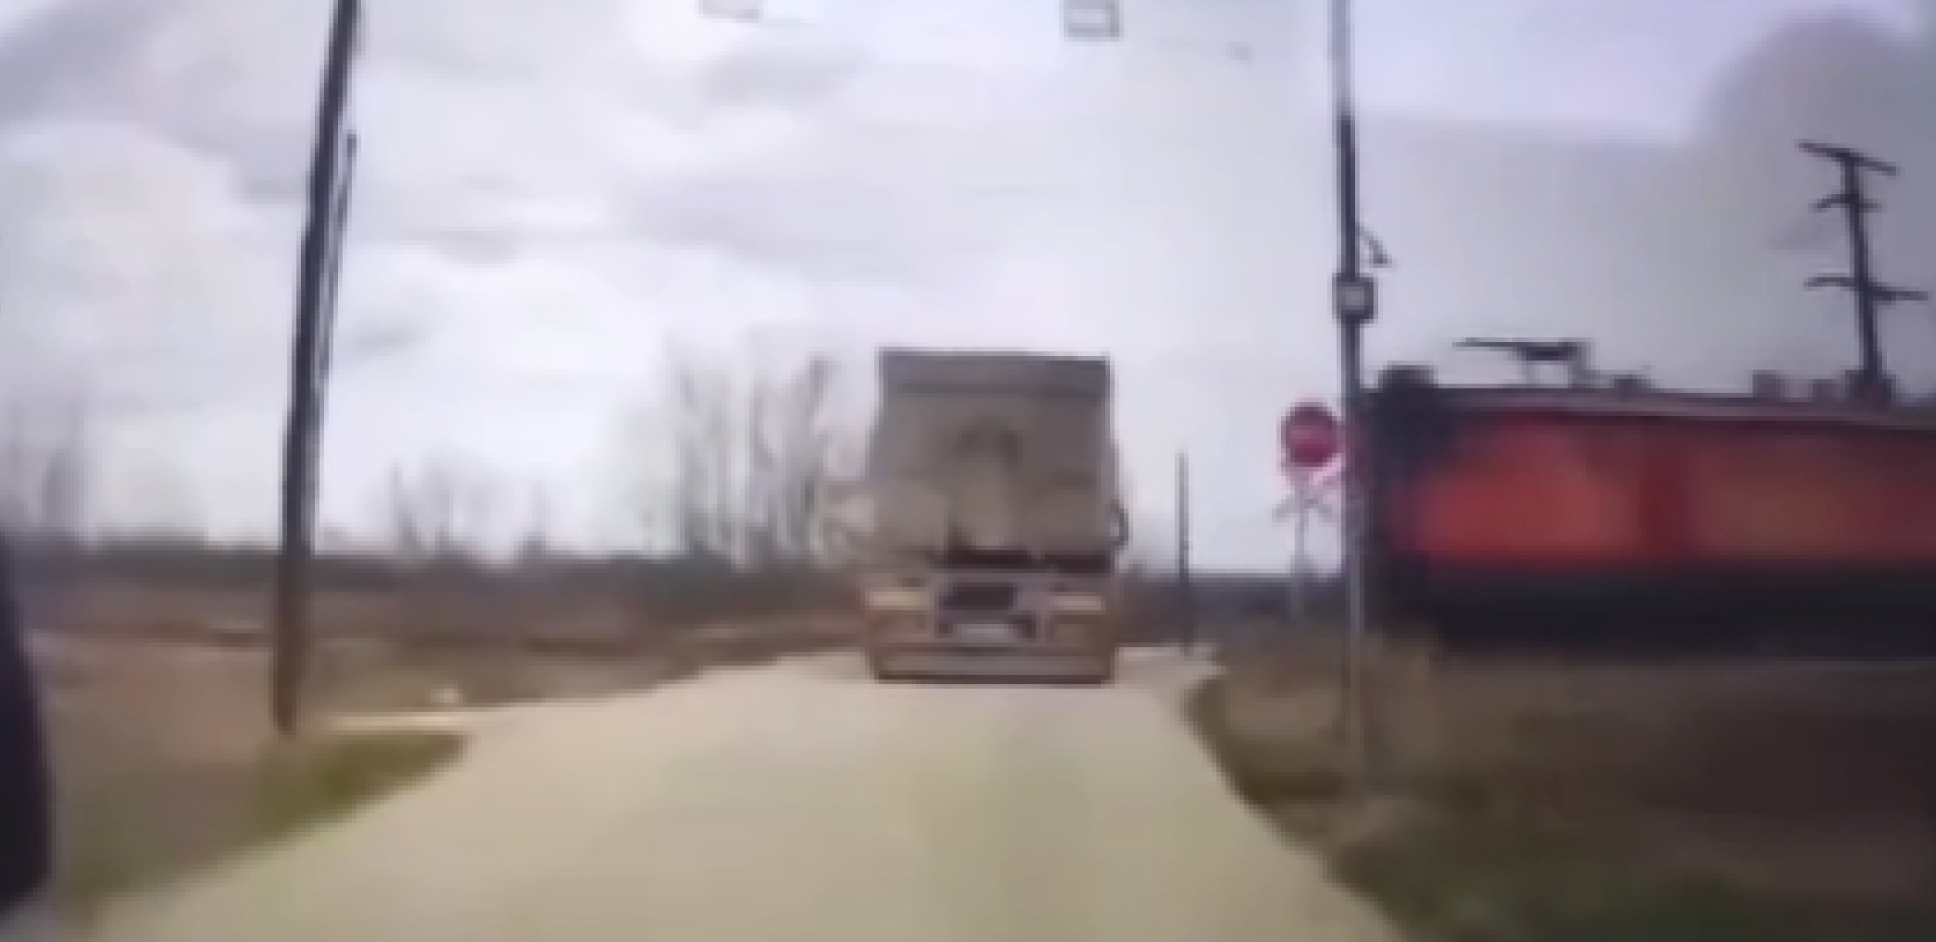 STRAVIČAN SUDAR NA PRUZI KOD JAGODINE Voz naleteo na kamion, pa ga razneo; dvoje teško povređenih (UZNEMIRUJUĆI VIDEO)